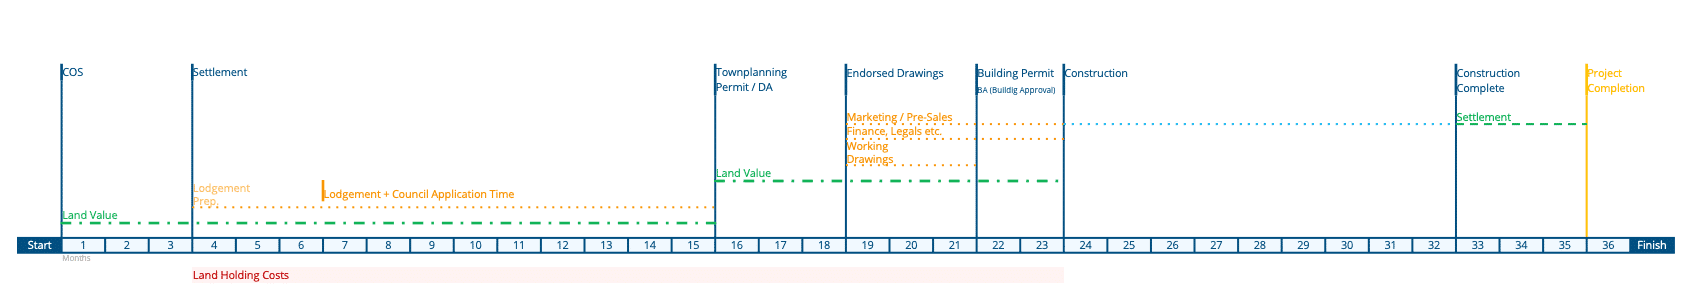 Property Development Timeline 